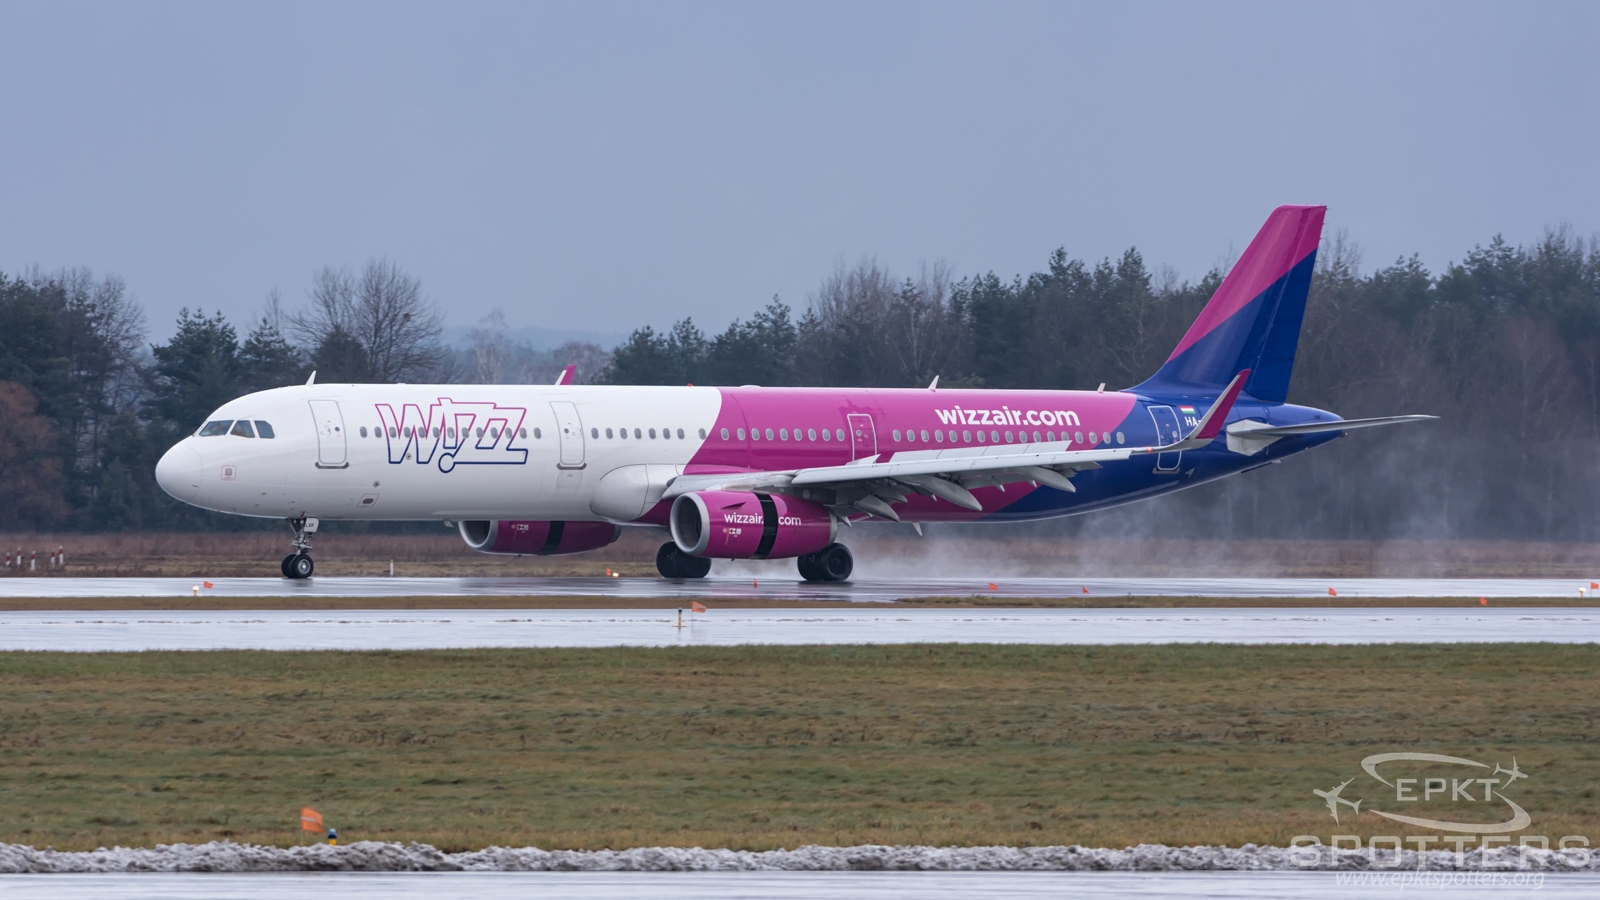 HA-LXR - Airbus 321 -231 (Wizz Air) / Pyrzowice - Katowice Poland [EPKT/KTW]